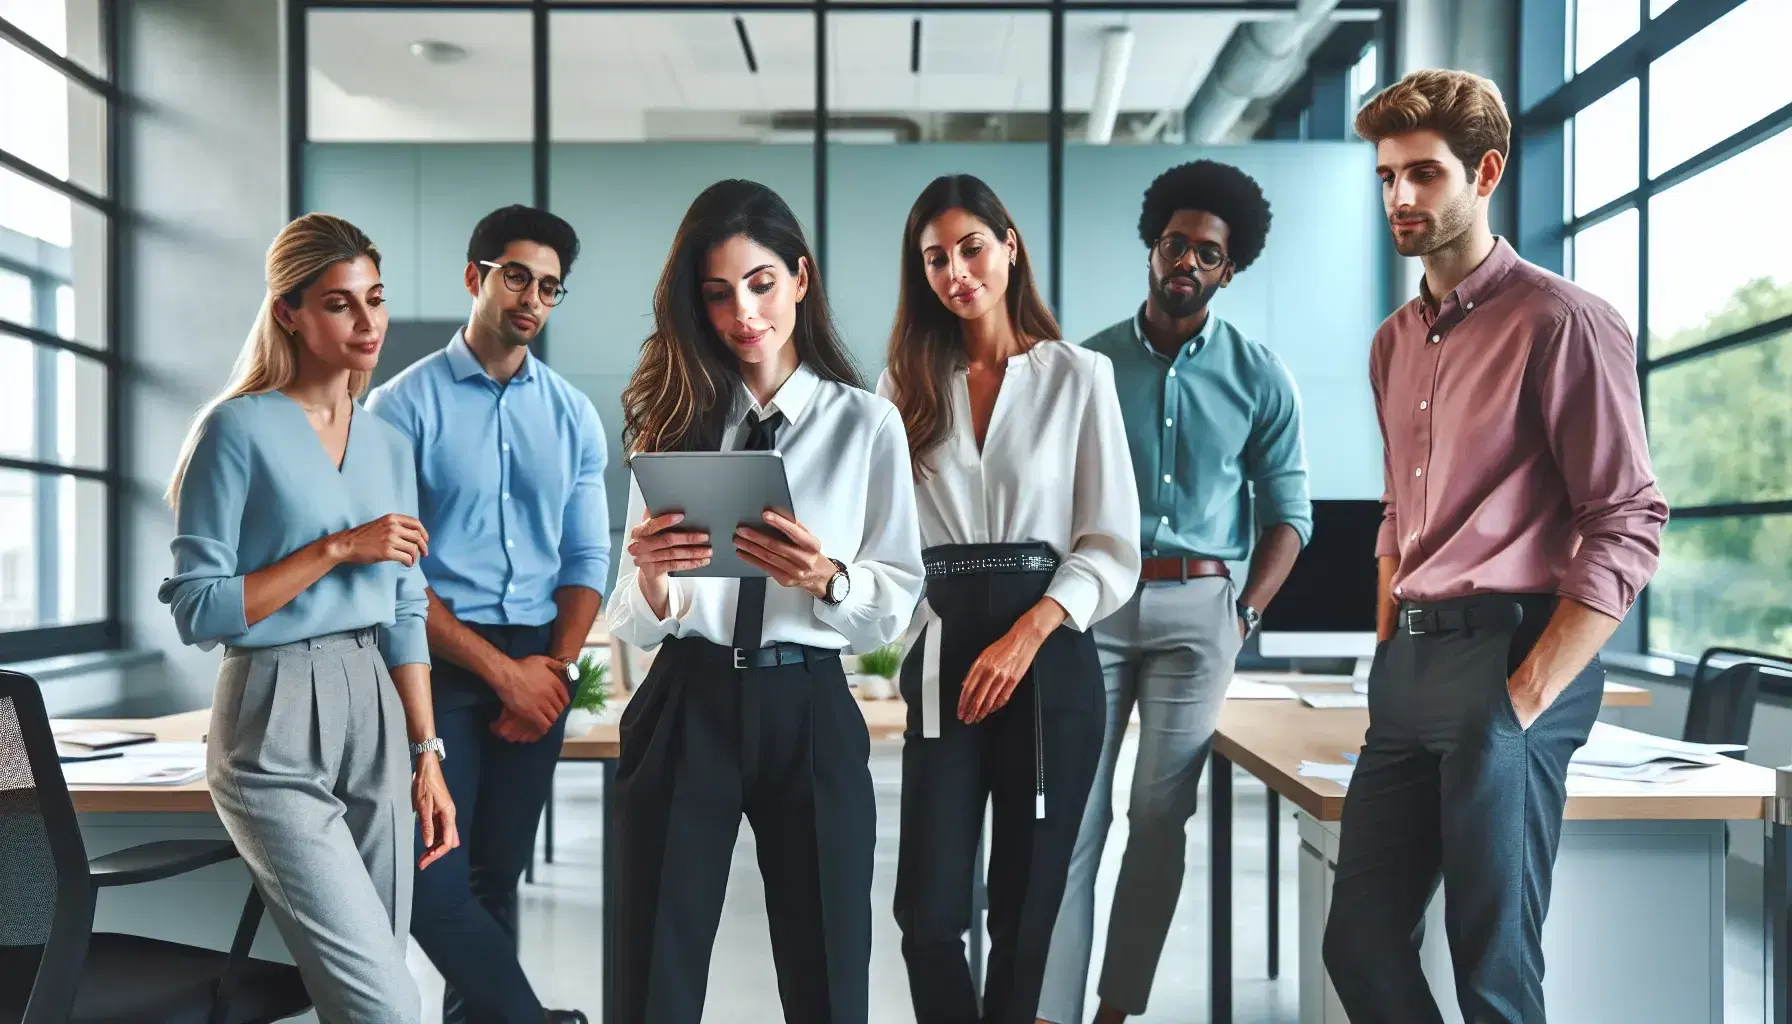 Grupo diverso de profesionales colaborando en una oficina moderna y luminosa, con una mujer sosteniendo una tableta digital y compartiendo ideas.